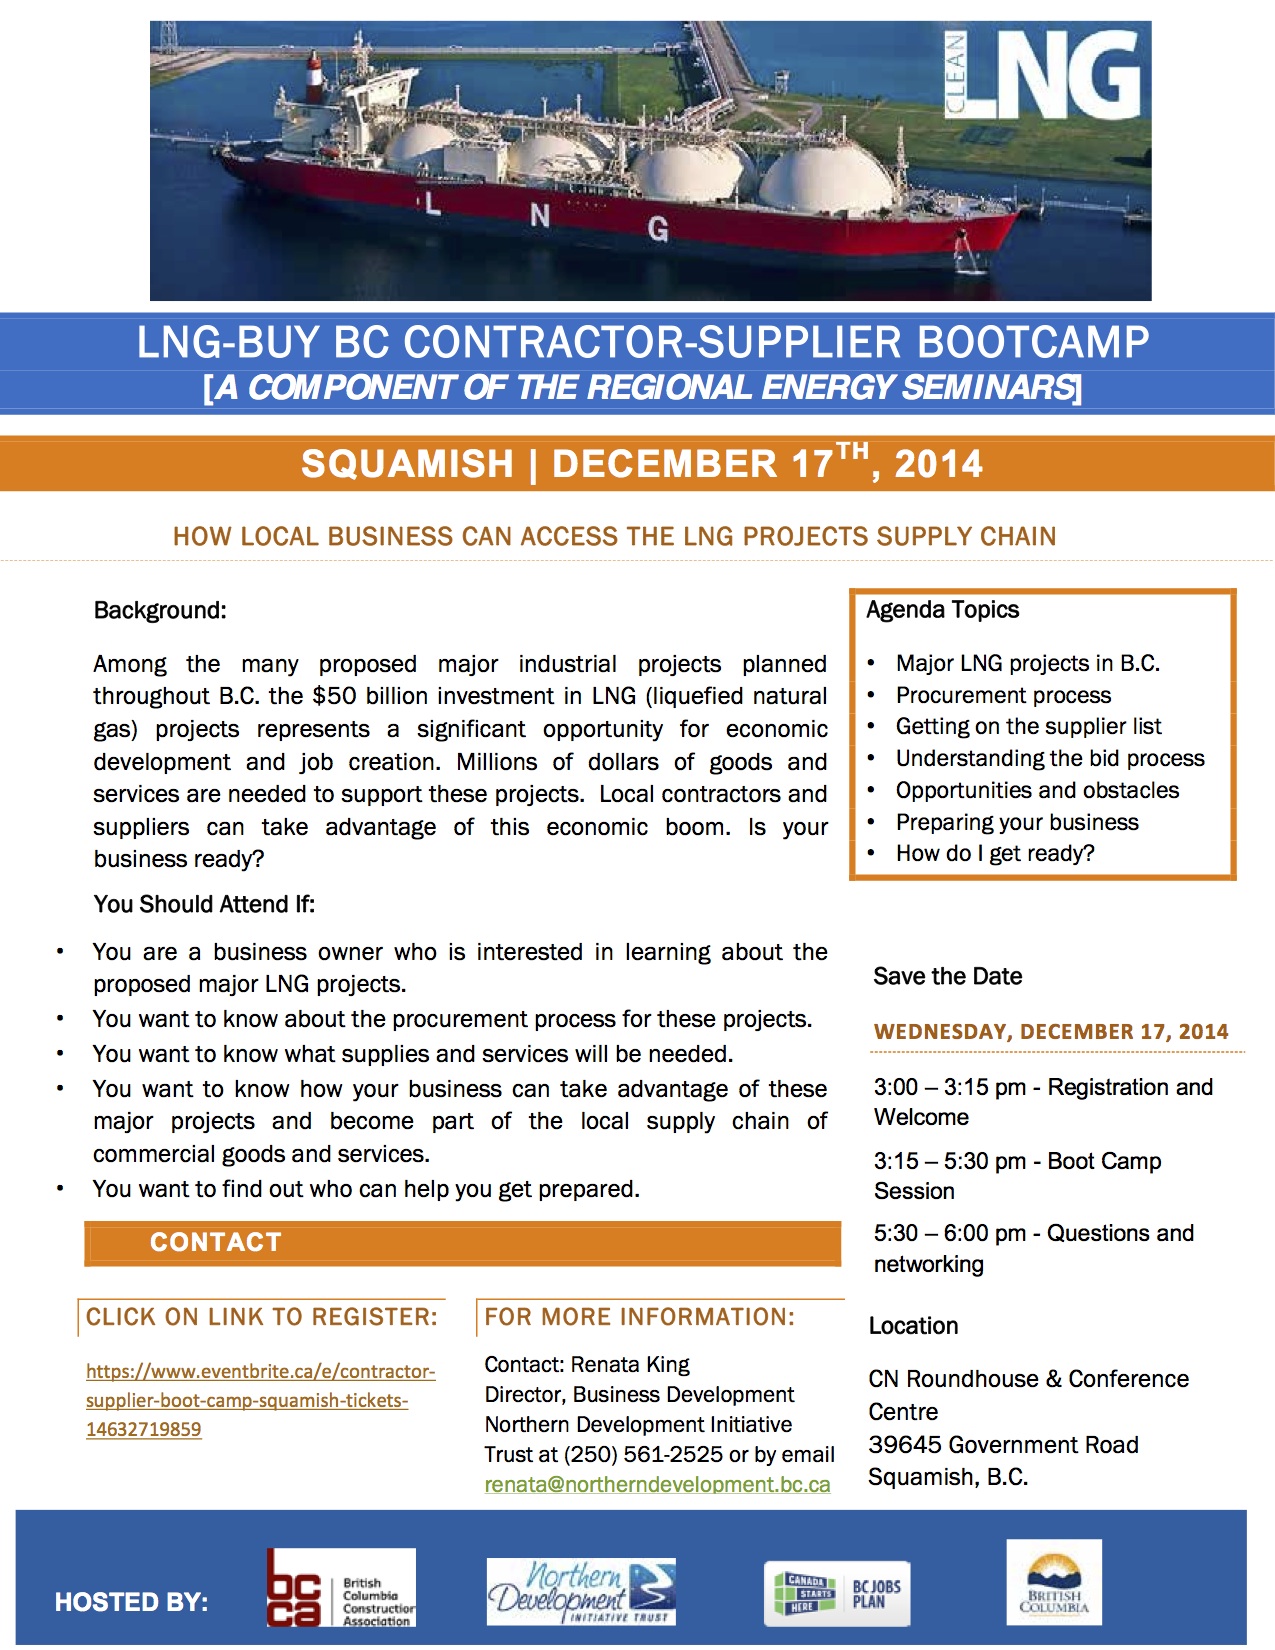 LNG Bootcamp Invite Fort St John-November 4 2014